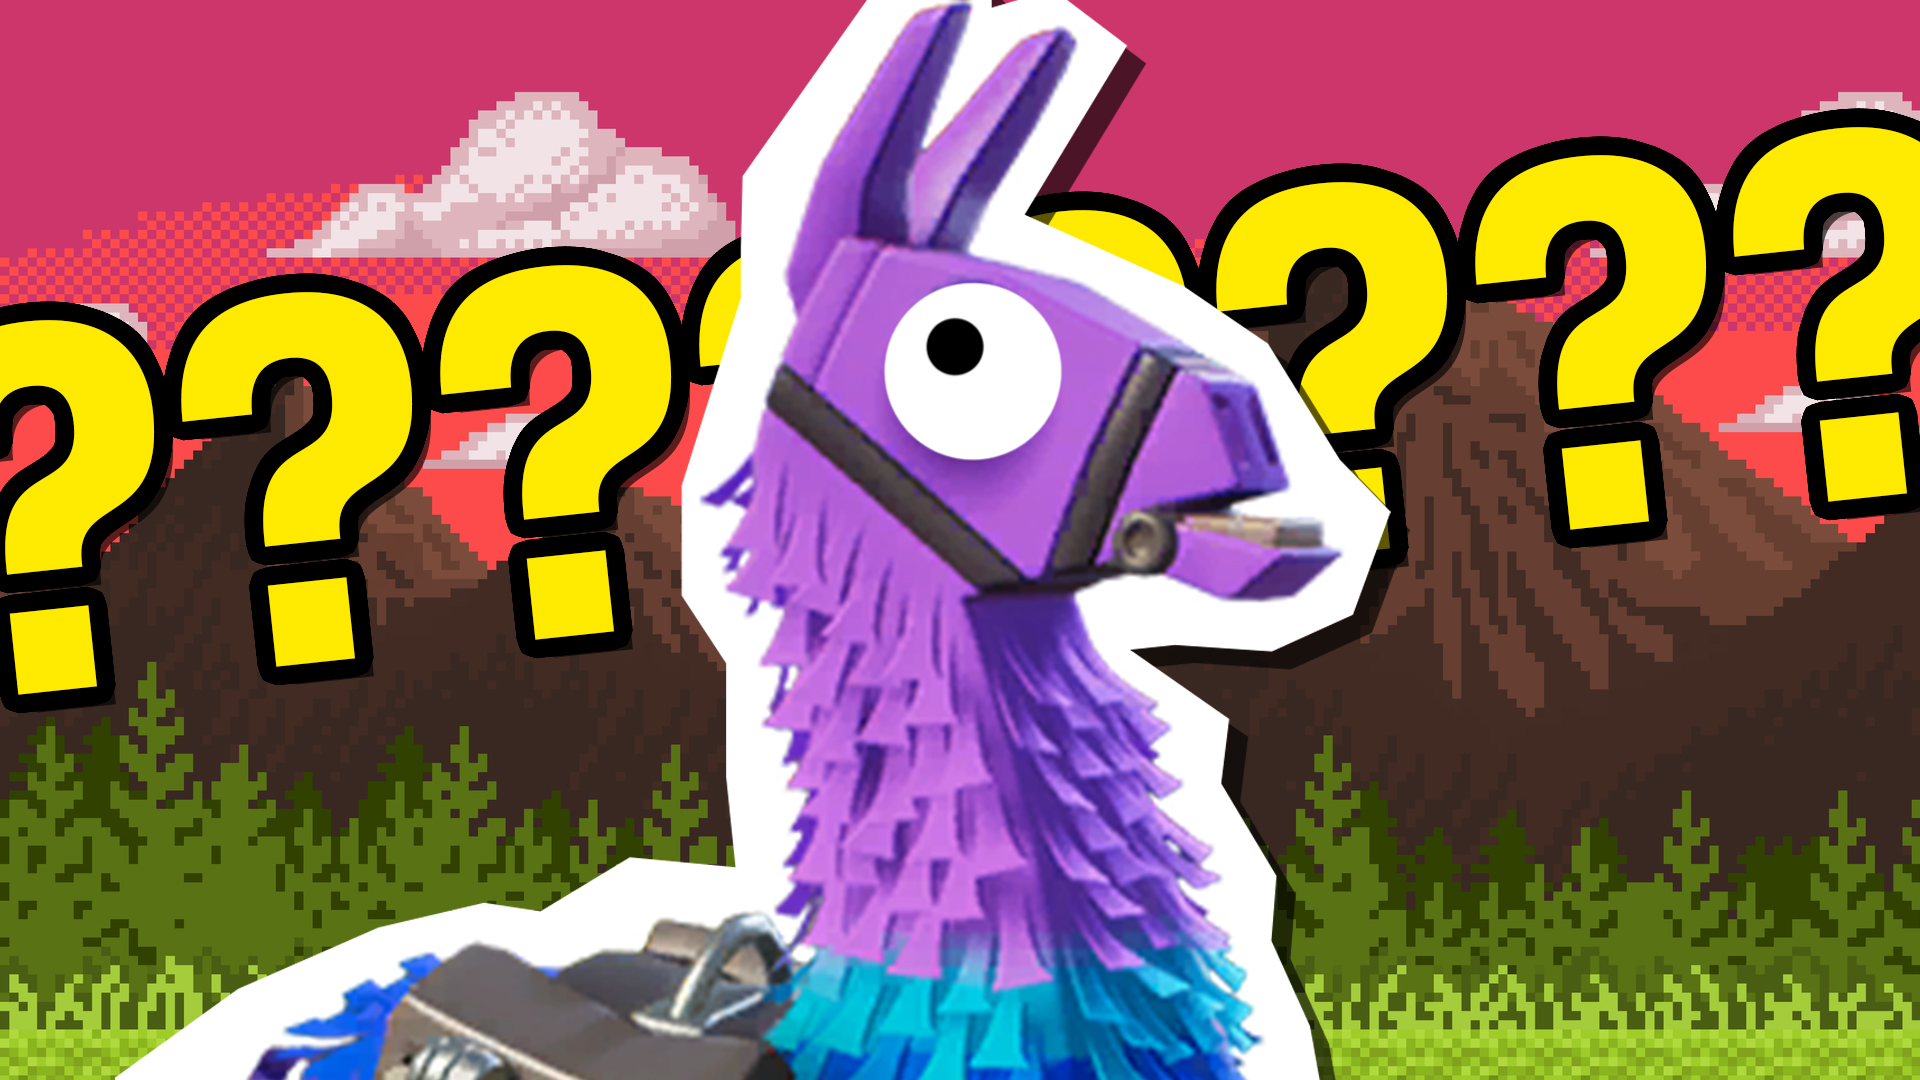 Loot llama from Fortnite